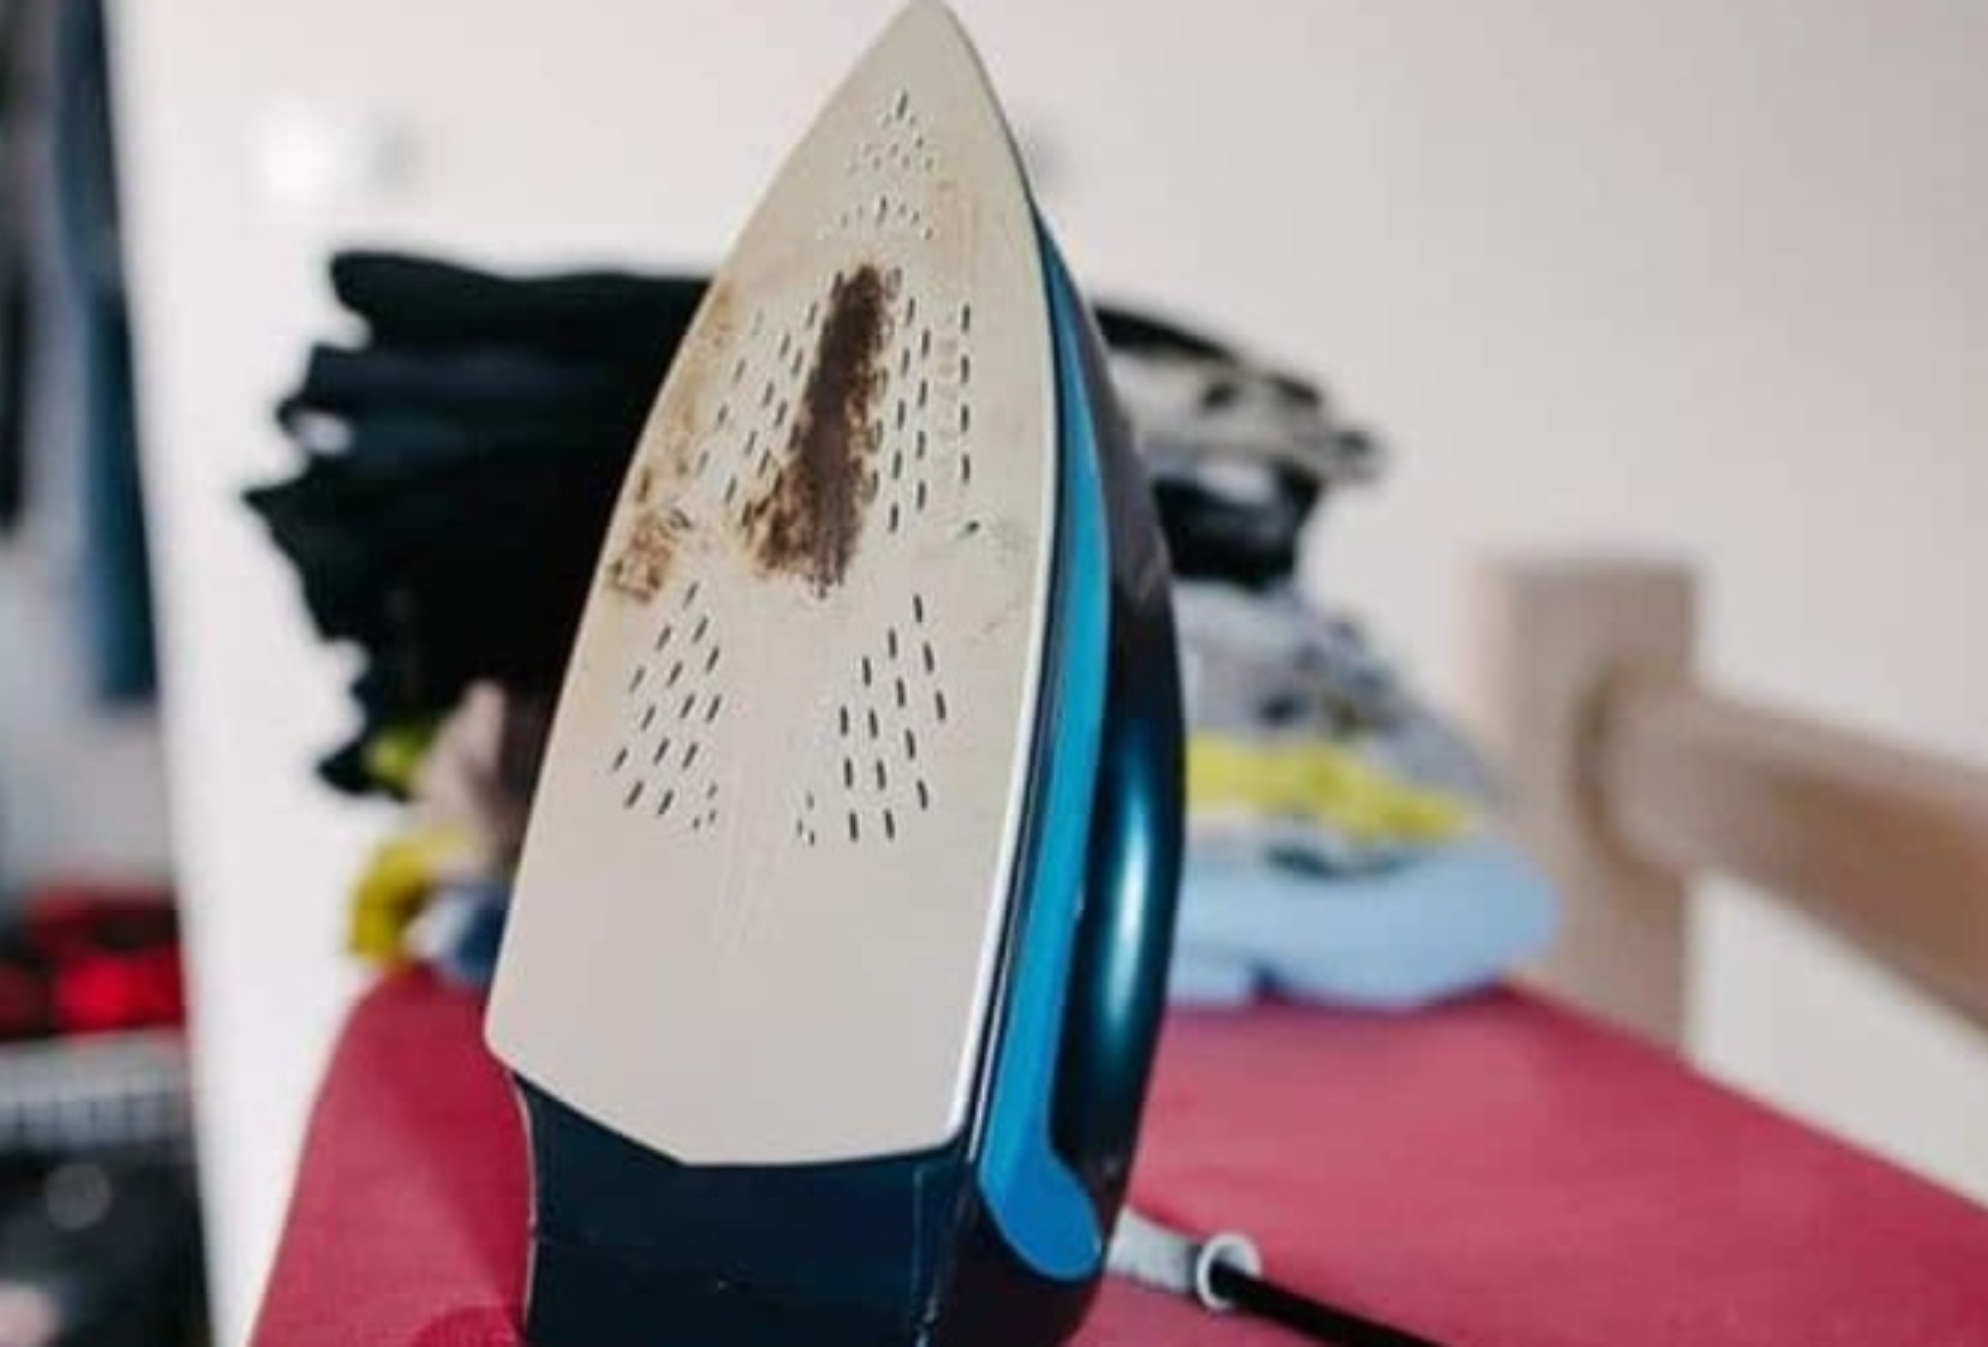 Κόλλησε ρούχο στο σίδερο: Πως να το καθαρίσετε χωρίς να το χαλάσετε